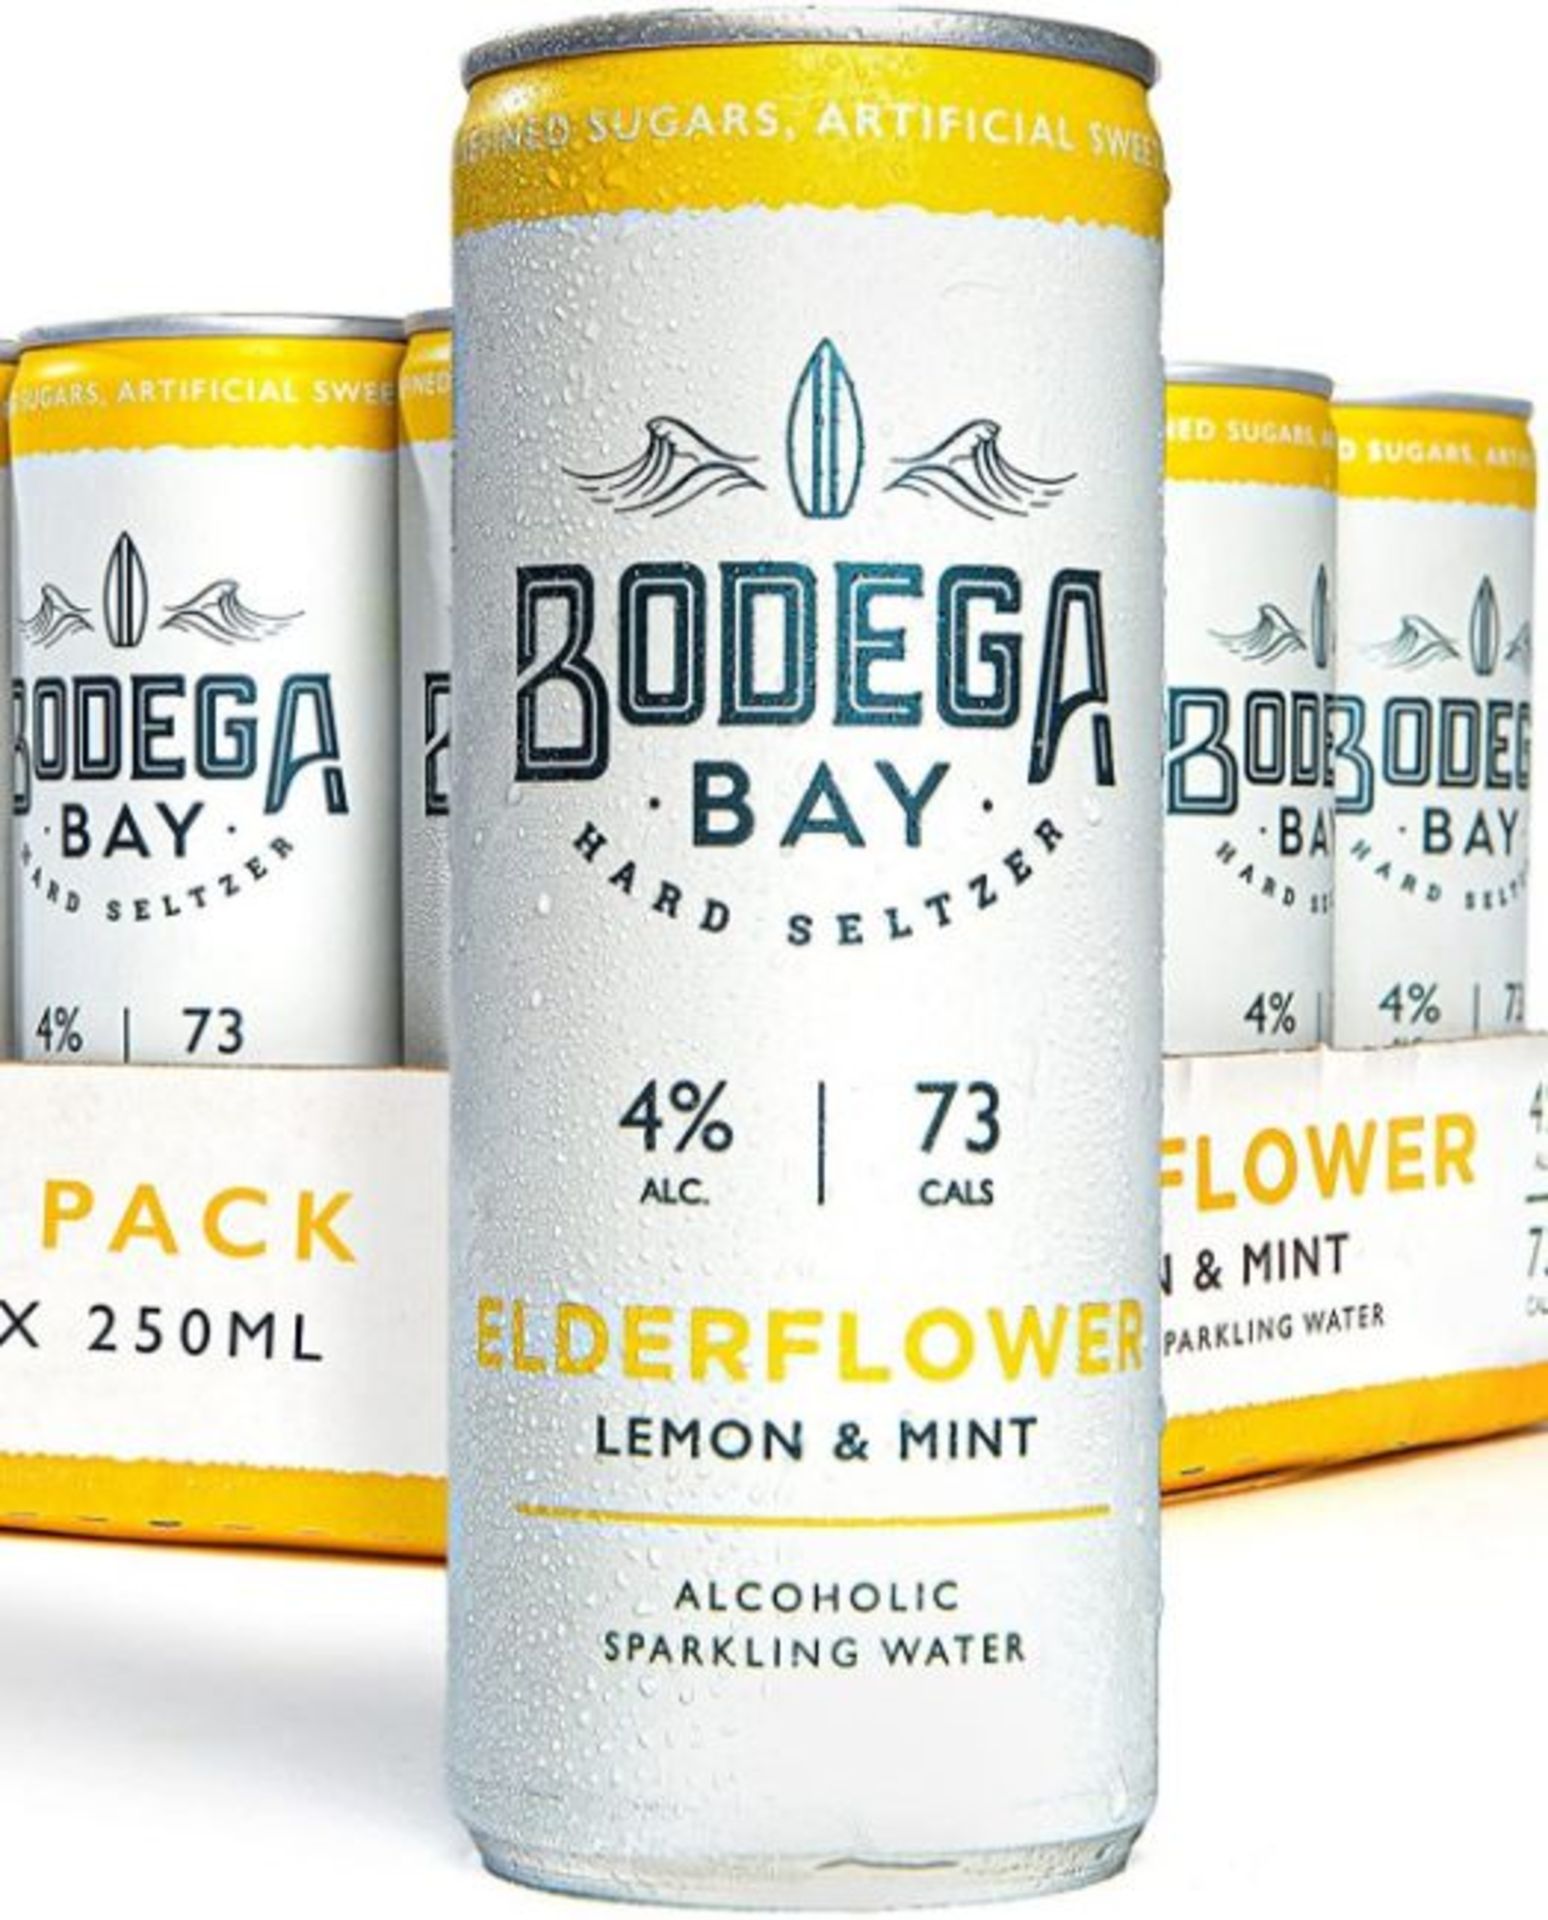 24 x Bodega Bay Hard Seltzer 250ml Alcoholic Sparkling Water Drinks - Elderflower Lemon & Mint - Image 7 of 9